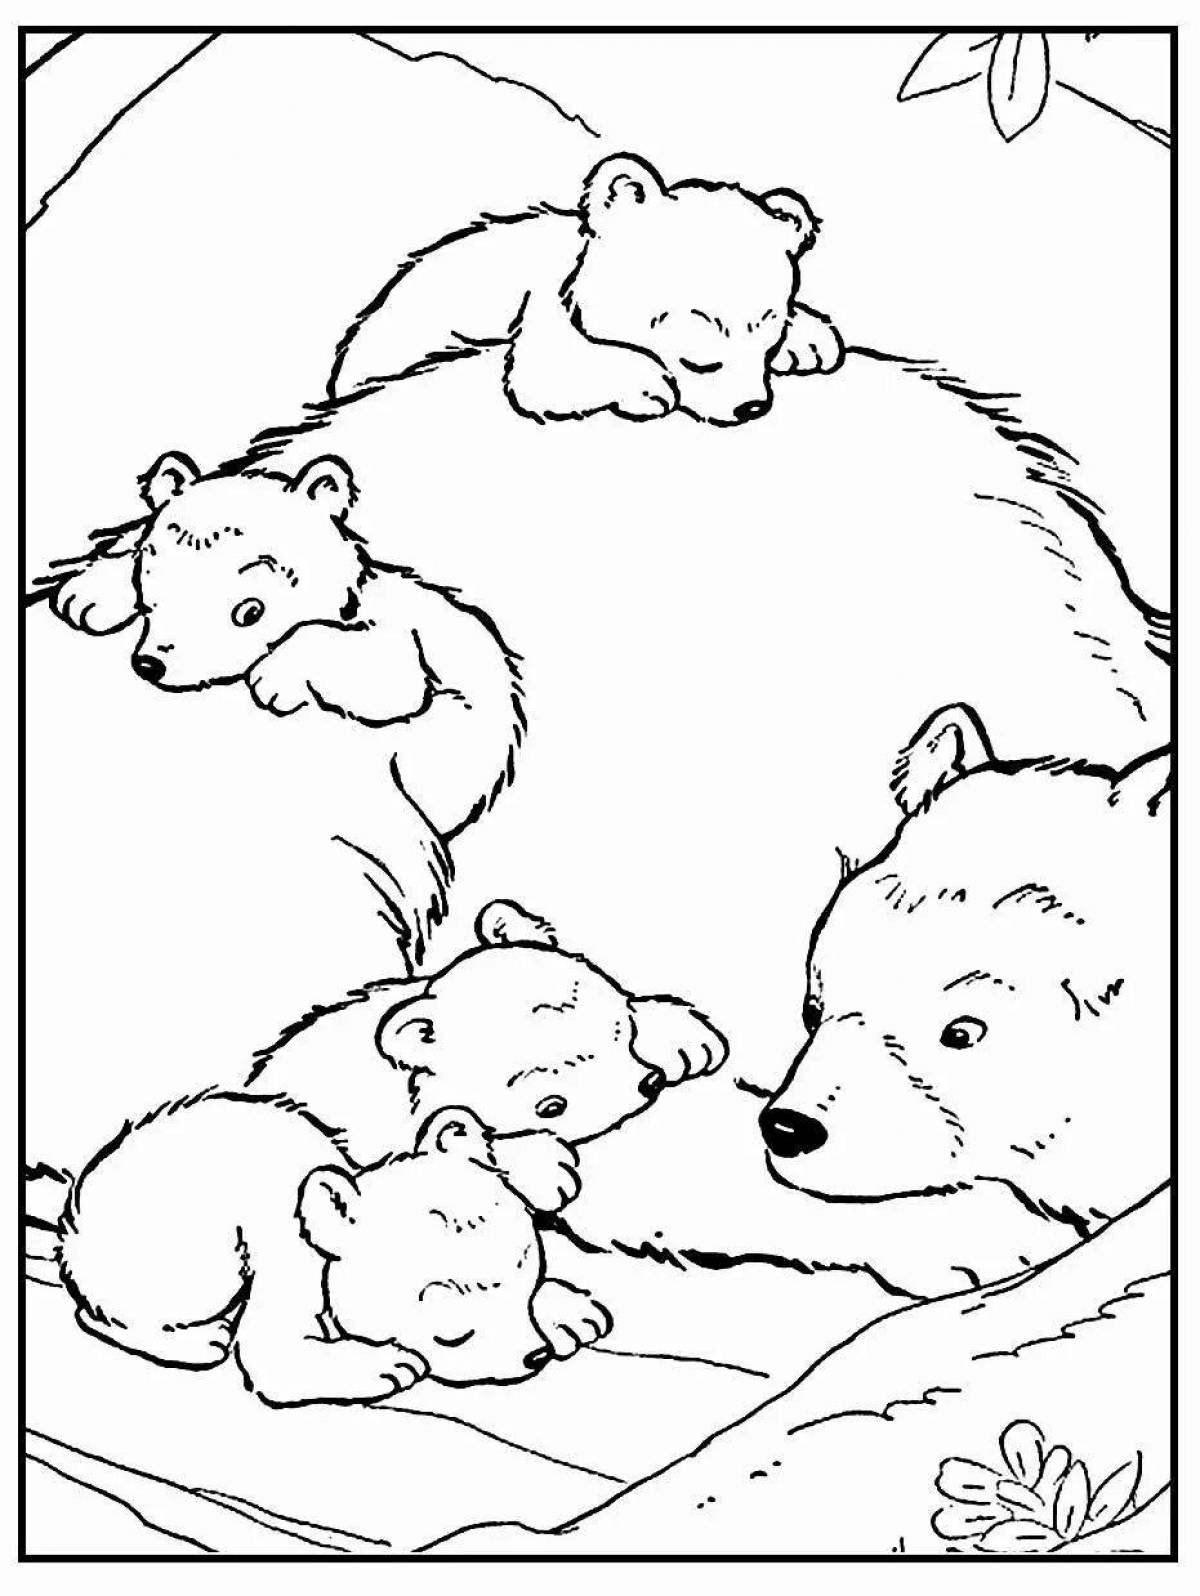 Coloring bear and bear cub